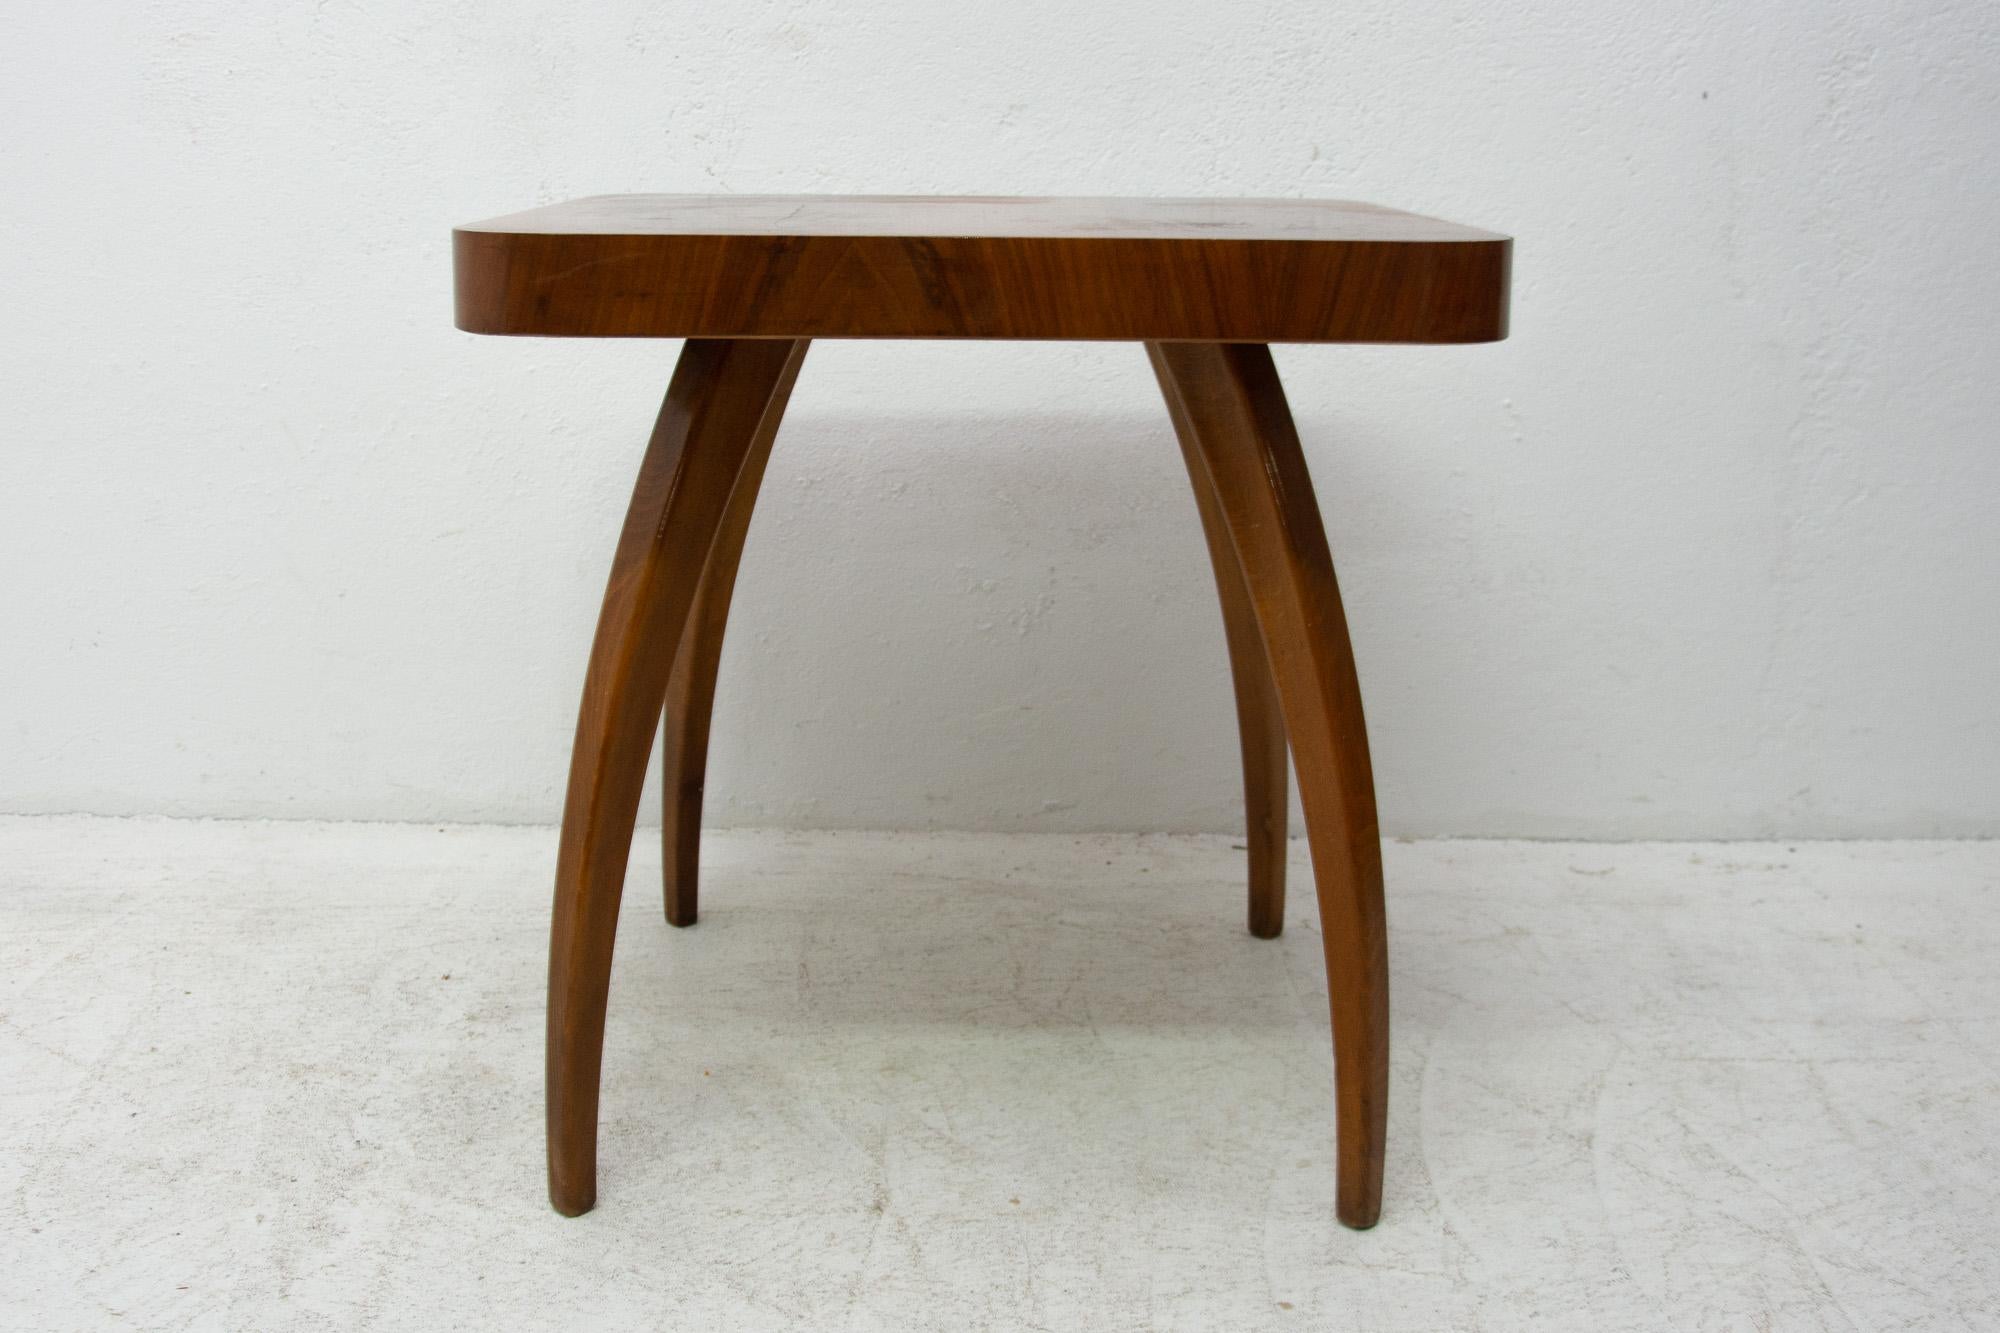 Dieser Tisch aus Nussbaumholz, genannt Spider, wurde von dem weltberühmten Architekten Jindrich Halabala unter der Katalognummer. H-259 in den 1930er Jahren entworfen und in den 1950er Jahren hergestellt. Der einzigartige Stil dieses Tisches ist auf